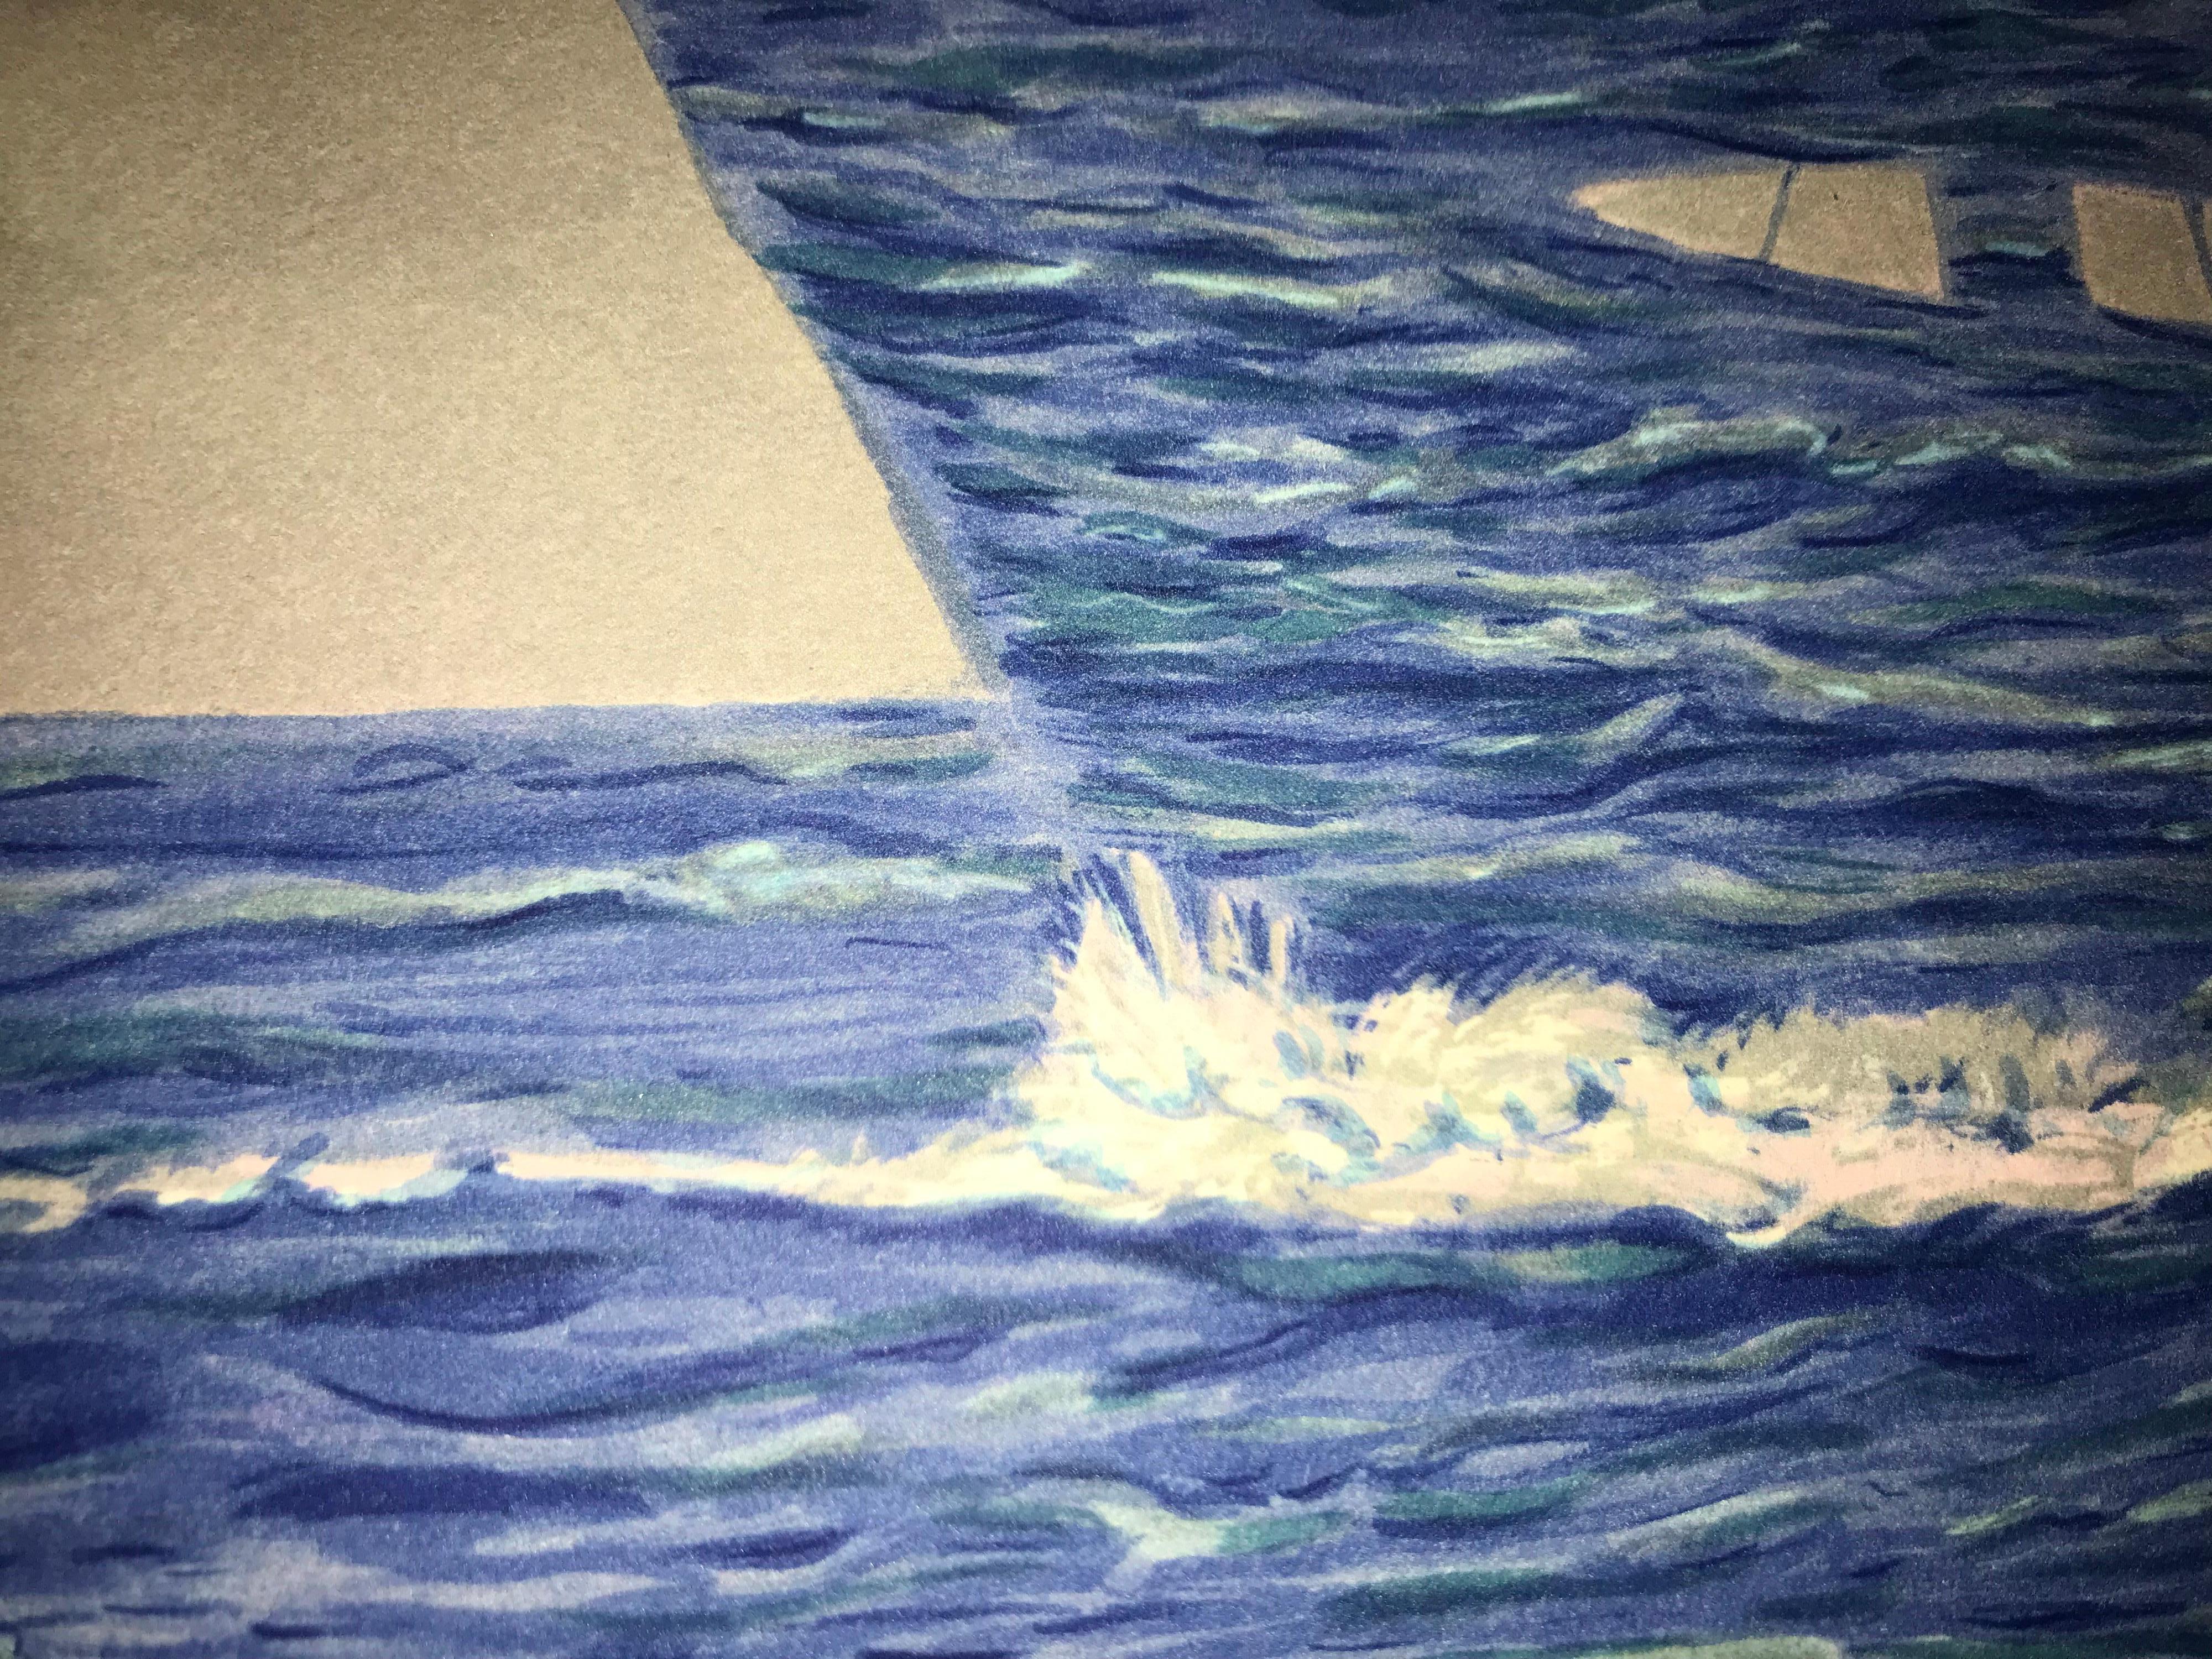 Lithographie en couleur d'après l'huile sur toile de 1951 de René Magritte, signature imprimée de Magritte et numérotée de l'édition de 300. 
La lithographie porte les timbres secs de la Fondation Magritte et de l'ADAGP et est contresignée au crayon